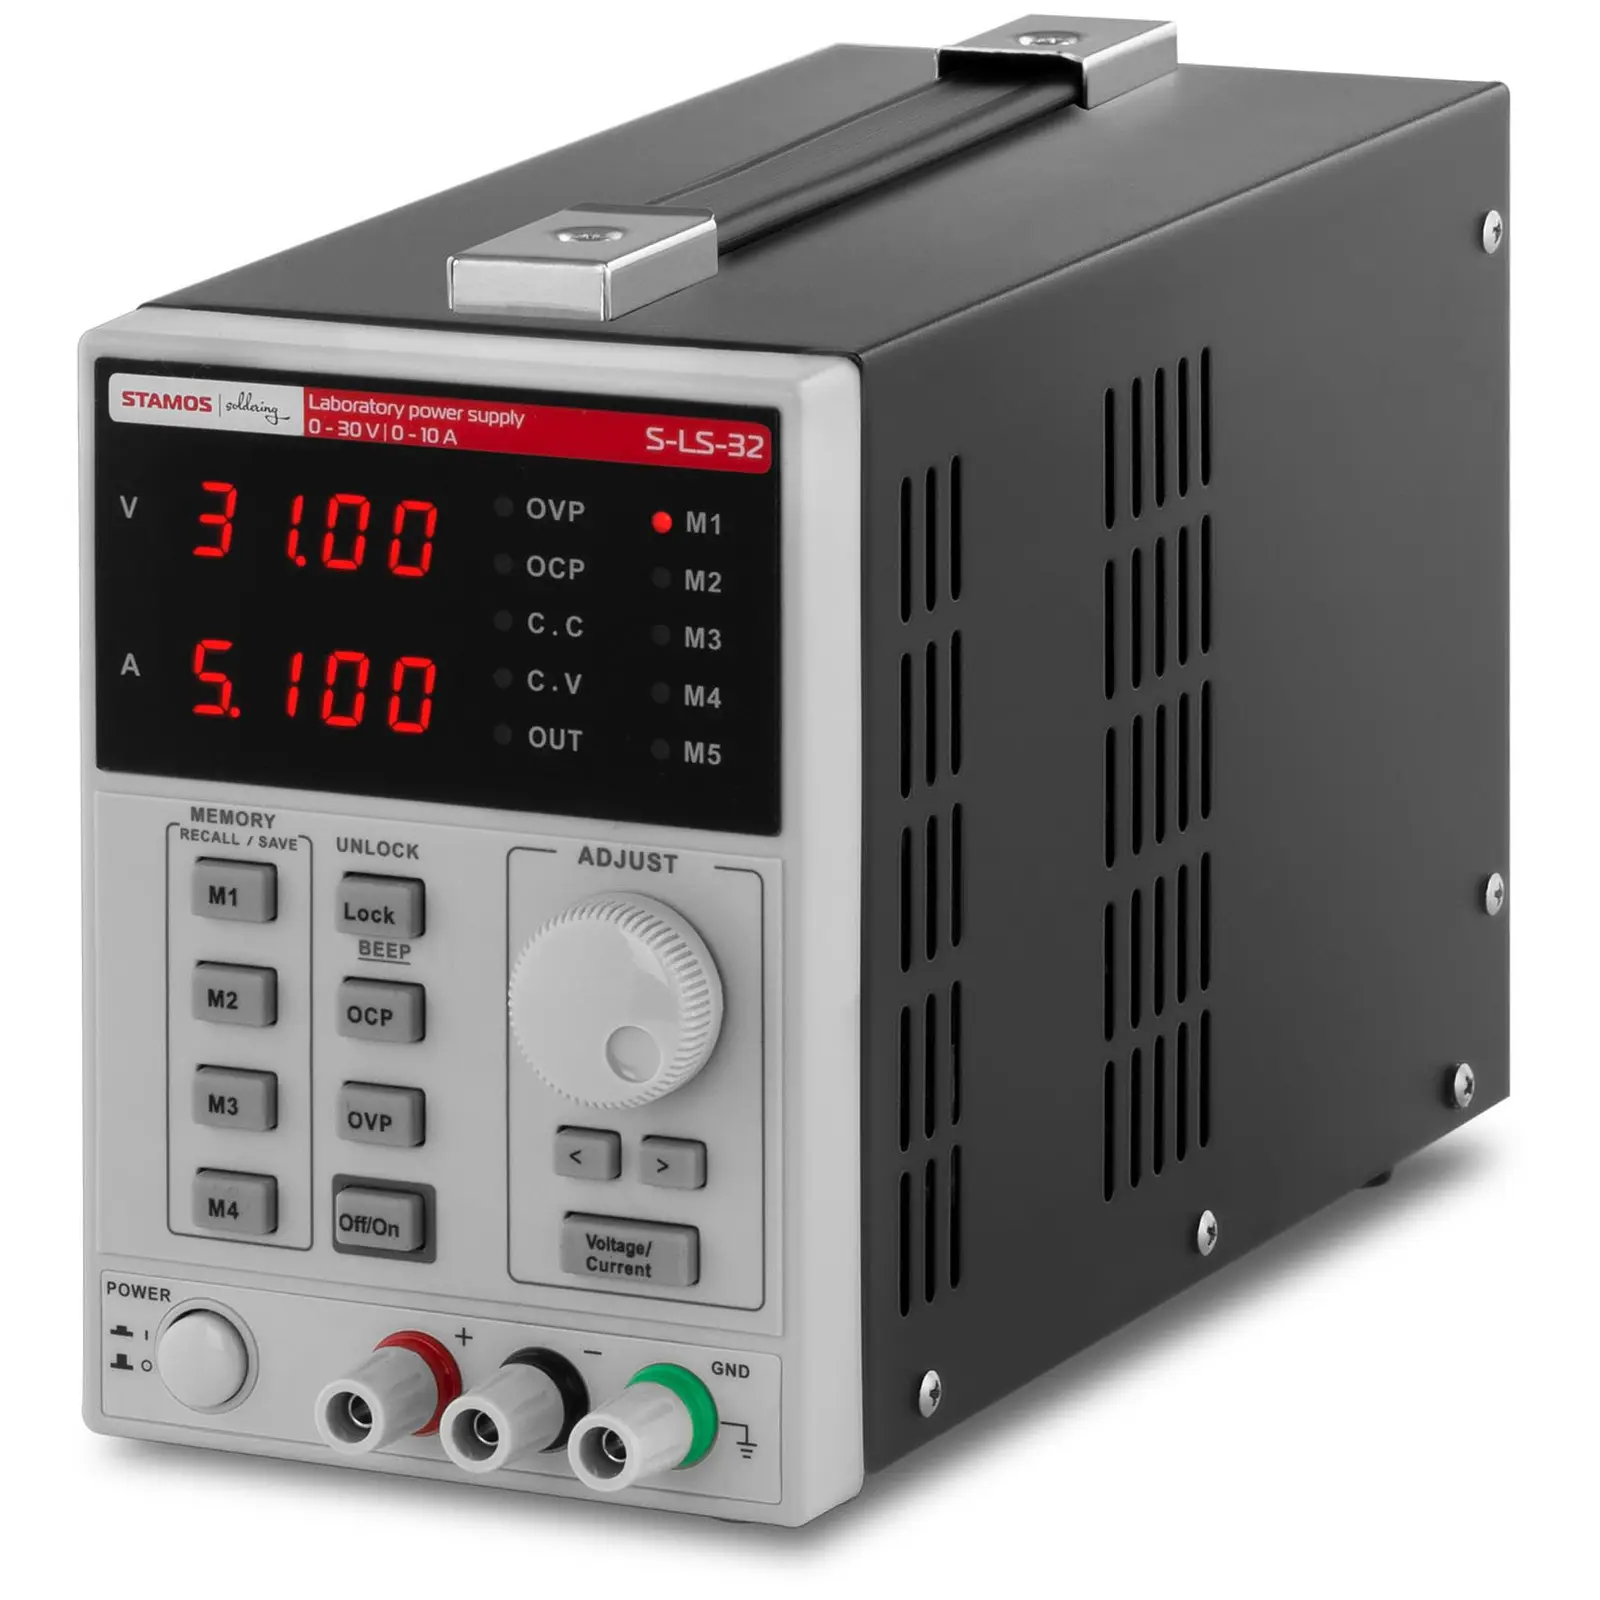 Fuente de alimentación para laboratorio - 0-30 V, 0-10 A DC, 550 W - 4 posiciones de memoria